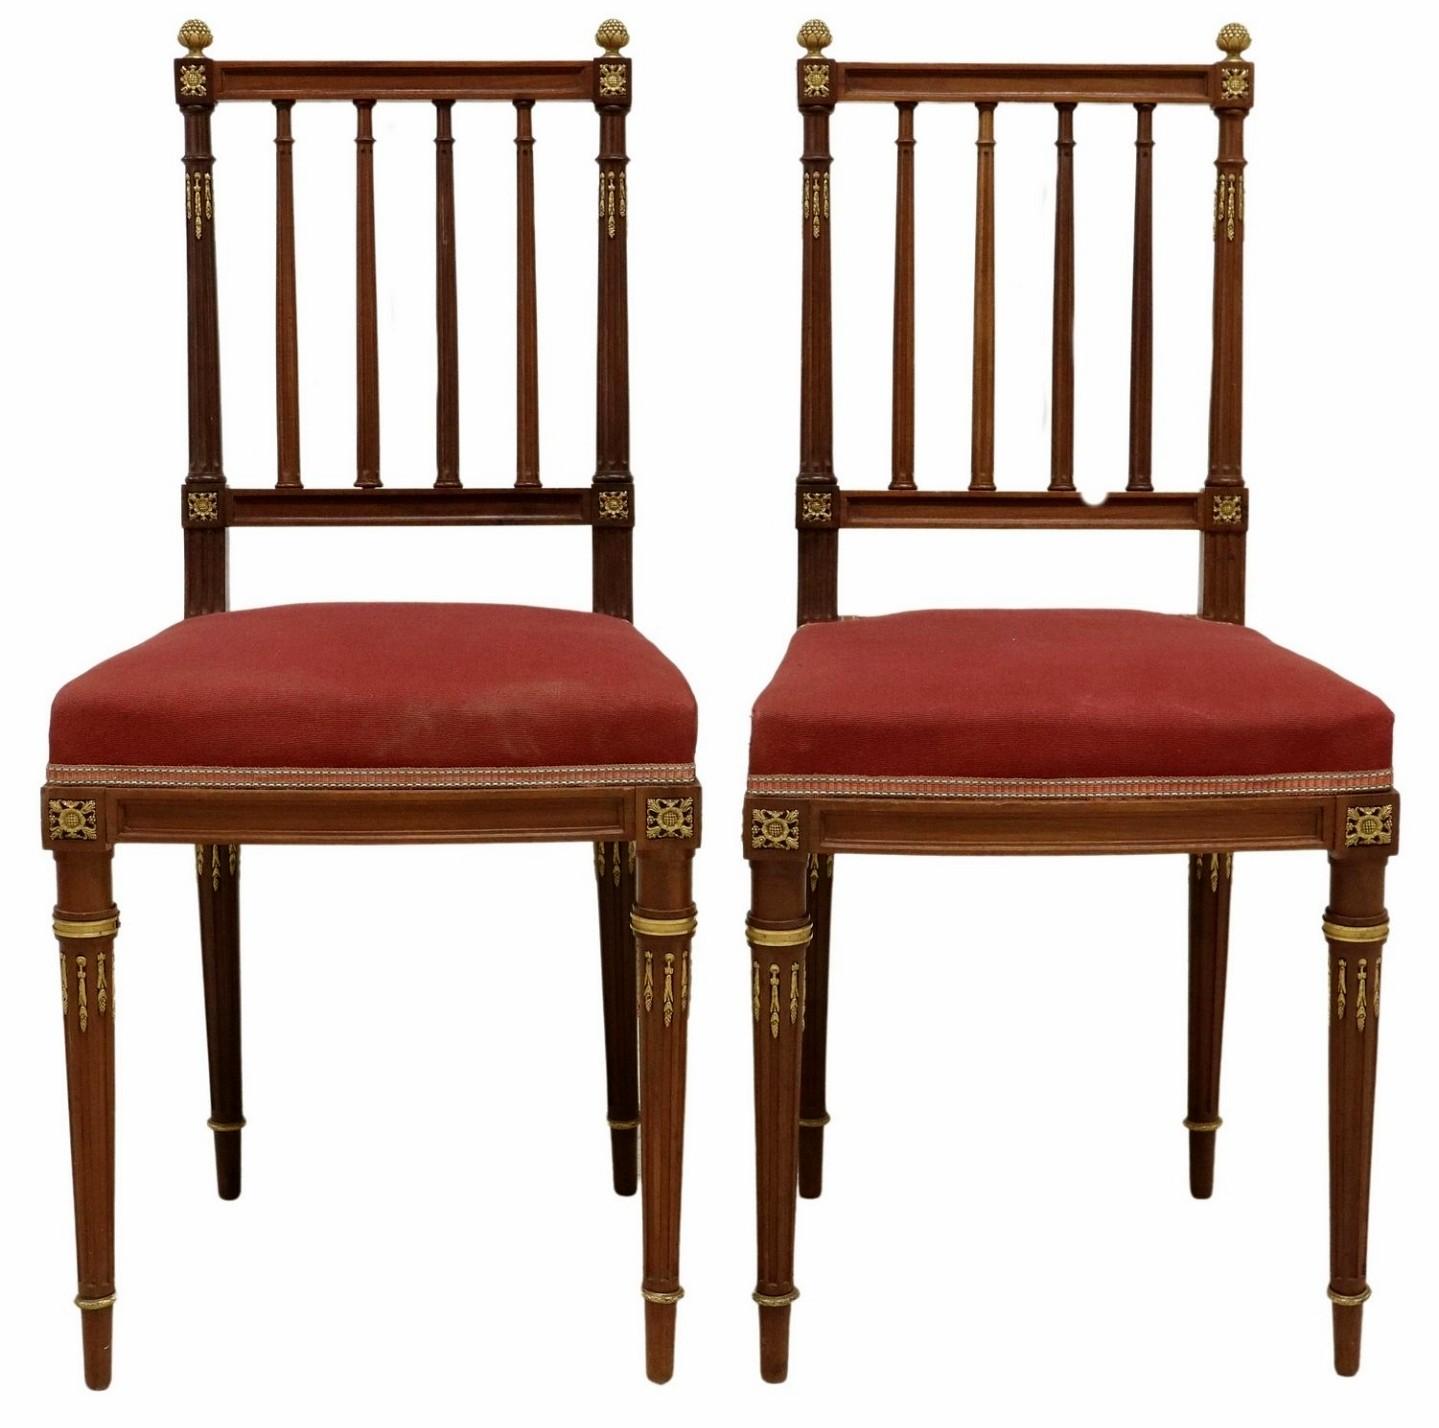 Ein Paar sehr hochwertiger antiker französischer Stühle im Stil Ludwigs XVI. aus vergoldeter Bronze und Mahagoni, die dem Pariser Luxusmöbelhersteller Maison Krieger (1826-1910) zugeschrieben werden.

Exquisit handgefertigt in Paris, Frankreich, im